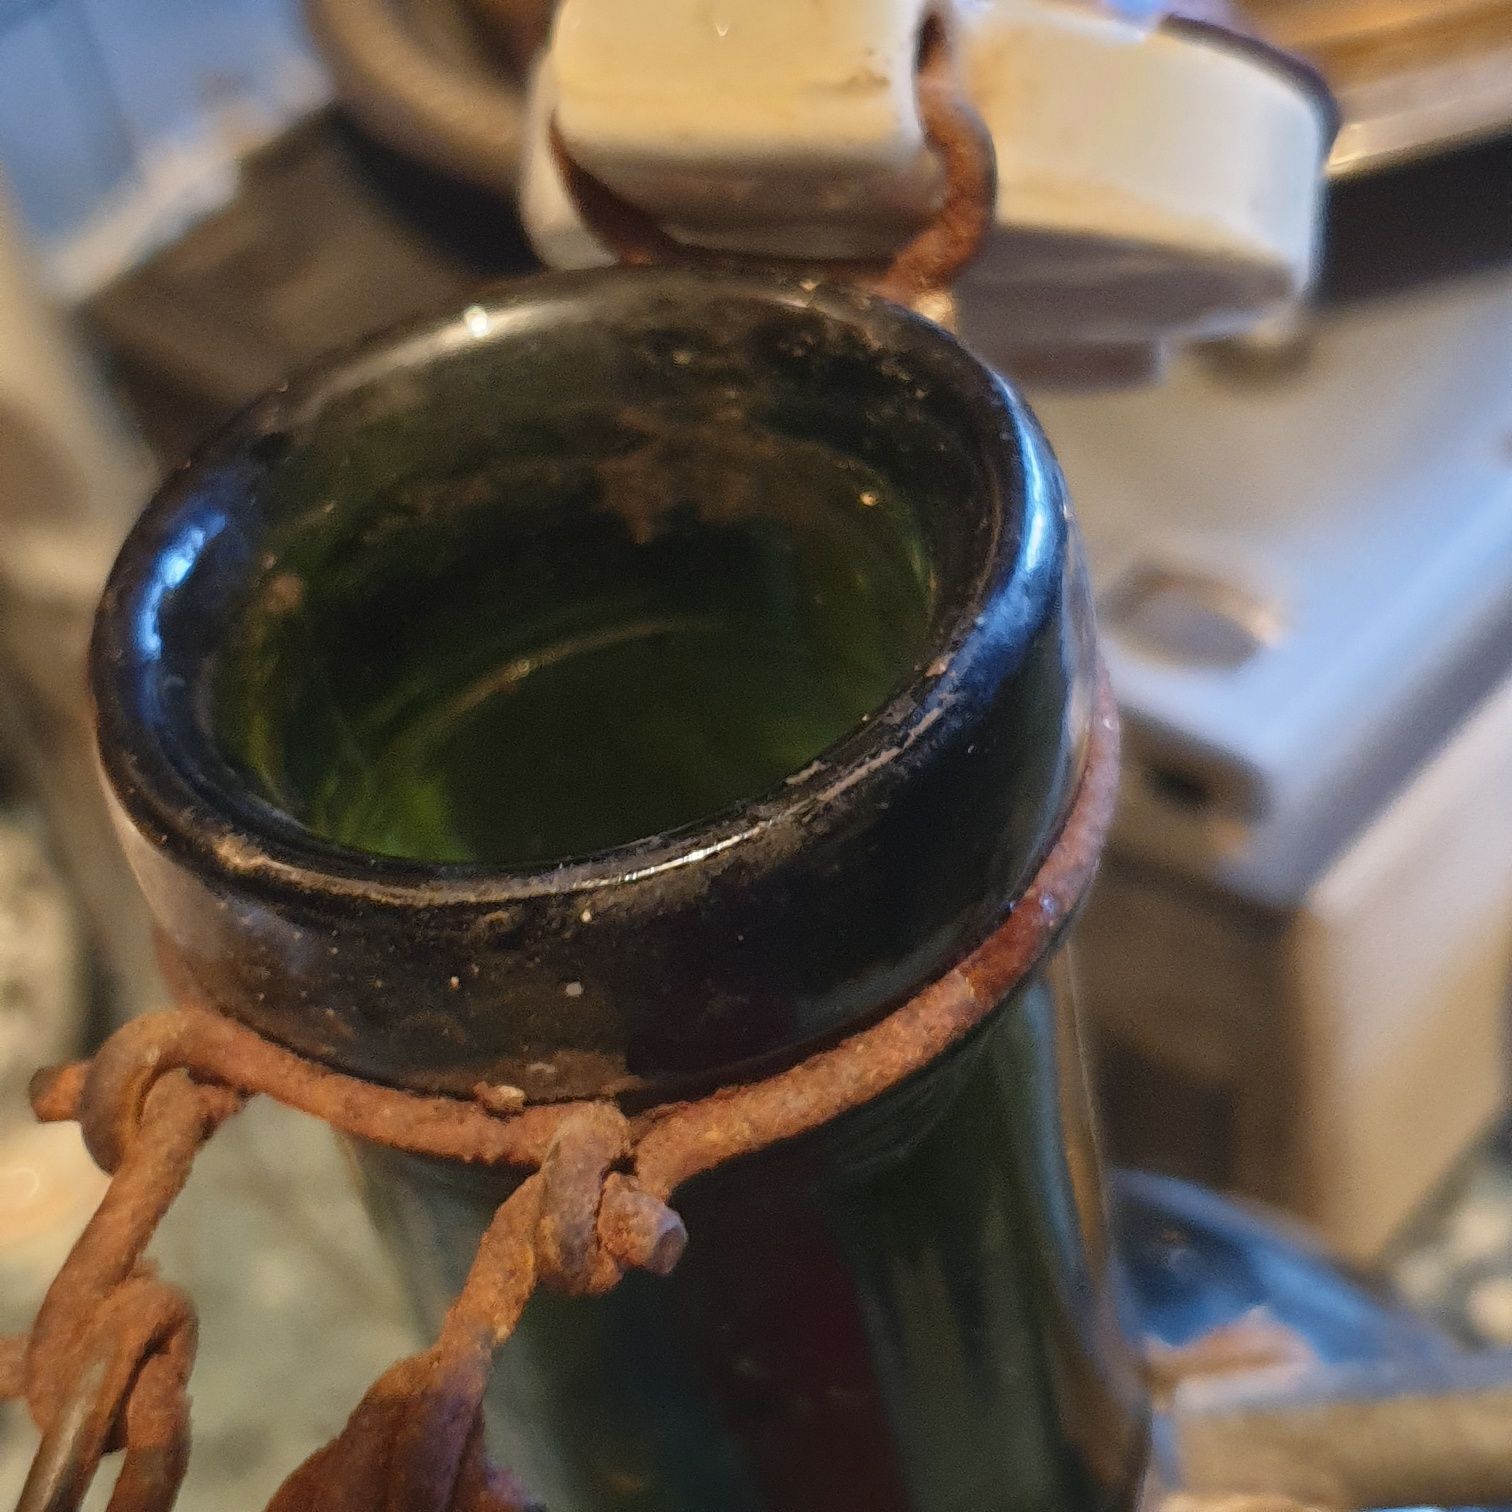 Alte Green Flasche mit Keramik, Germany Bottle 2 liter 19th